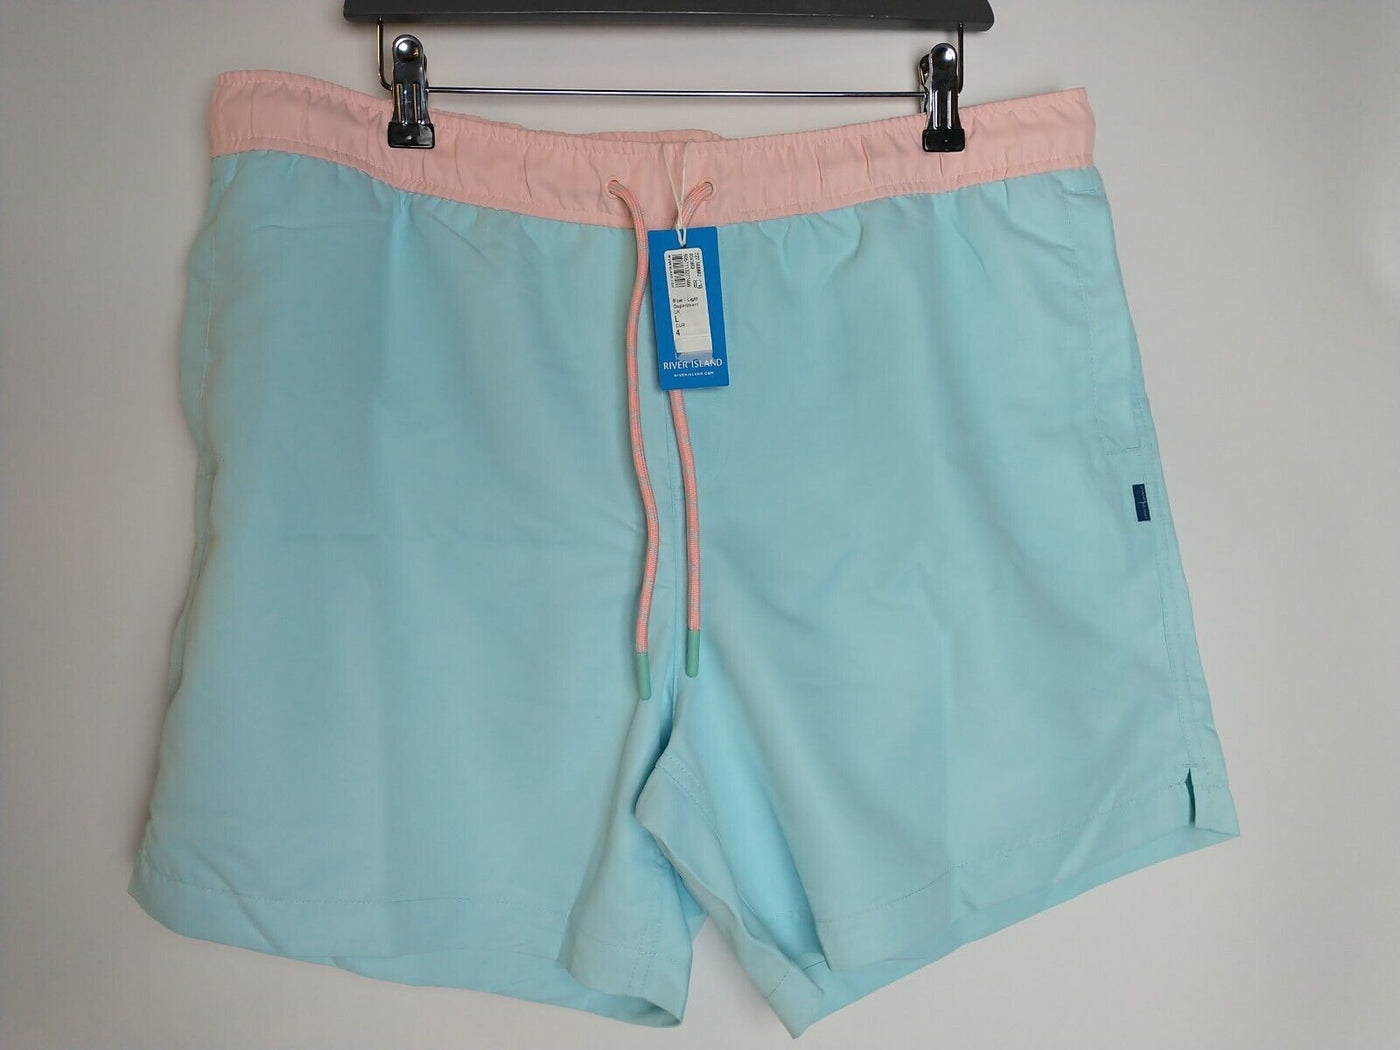 River Island Men's Blue Regular Fit Swin Shorts Size Large **** V144